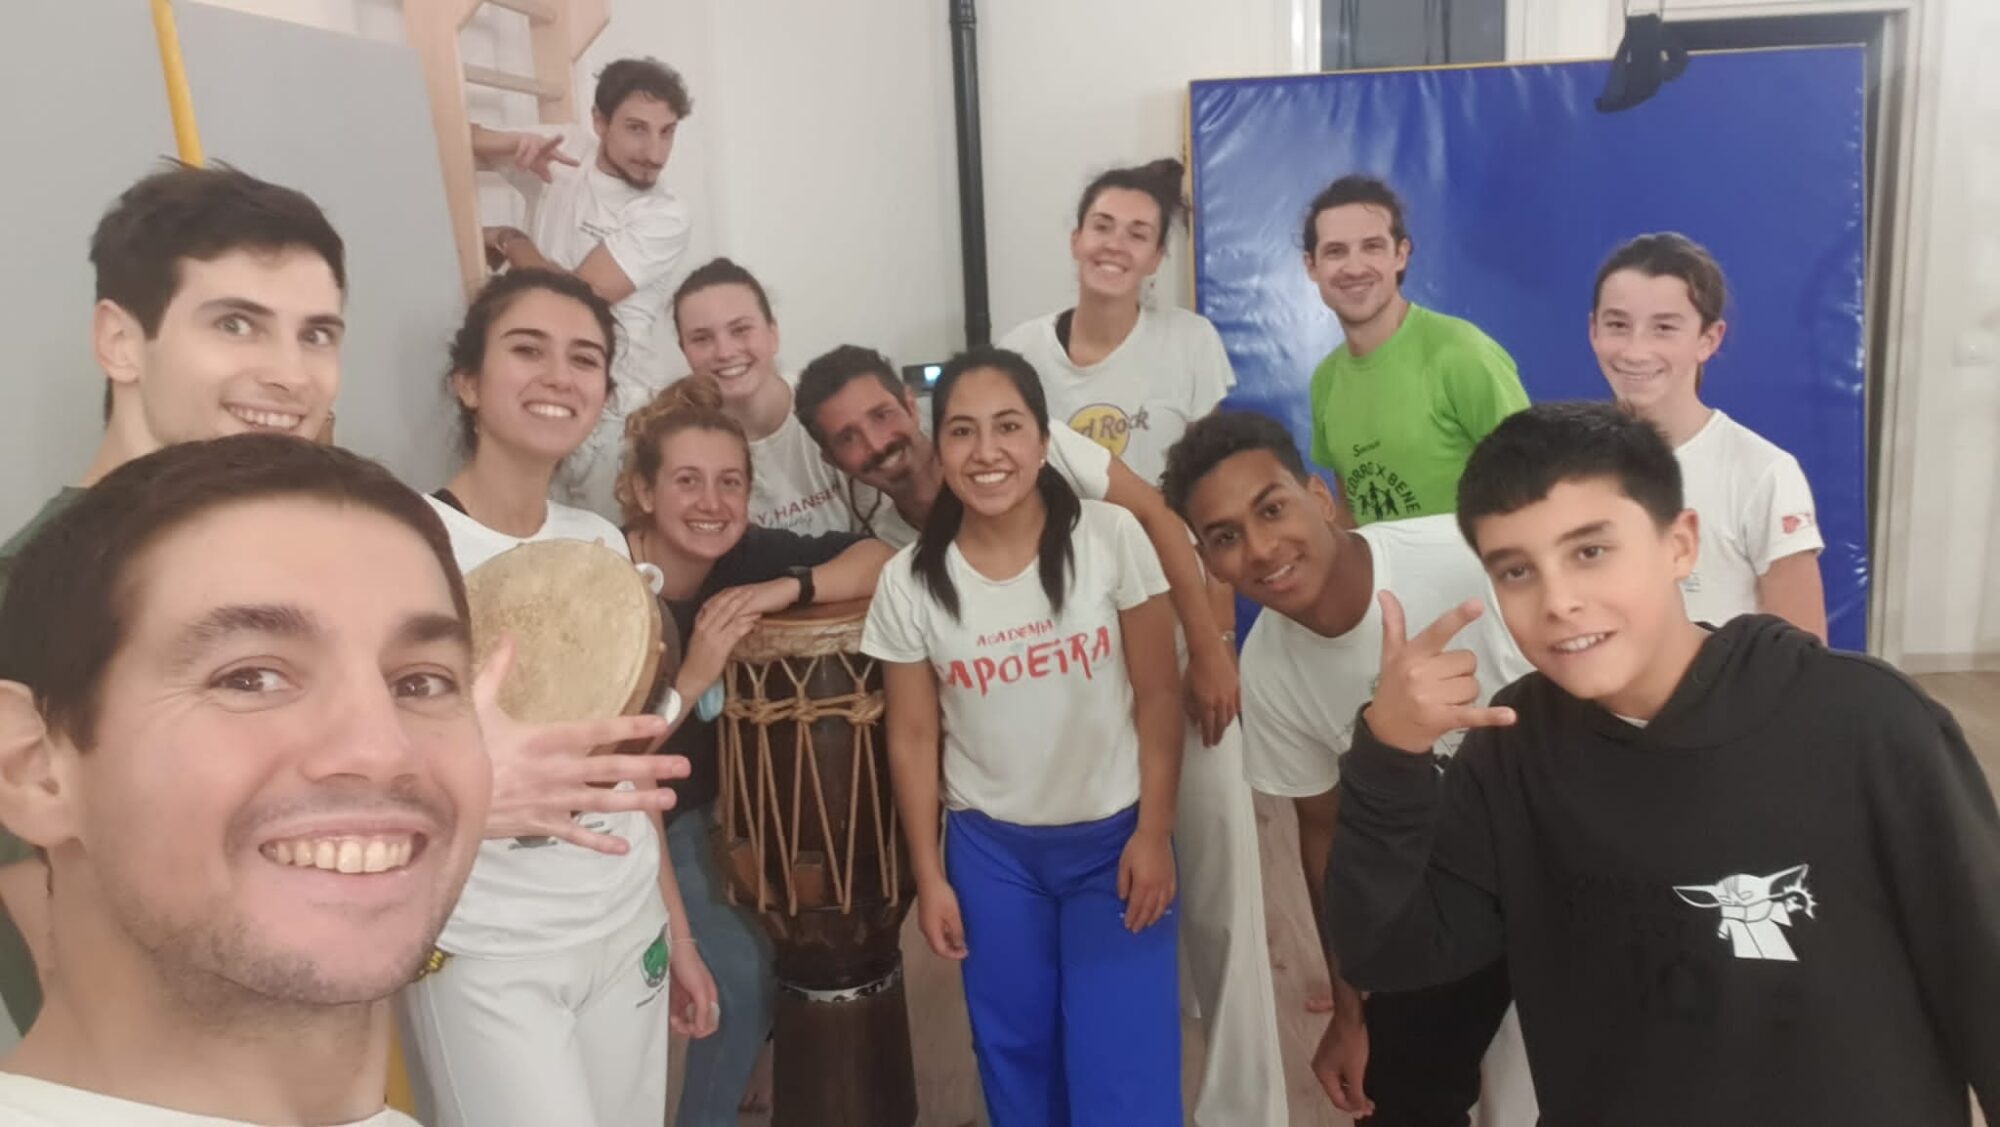 gruppo capoeira milano